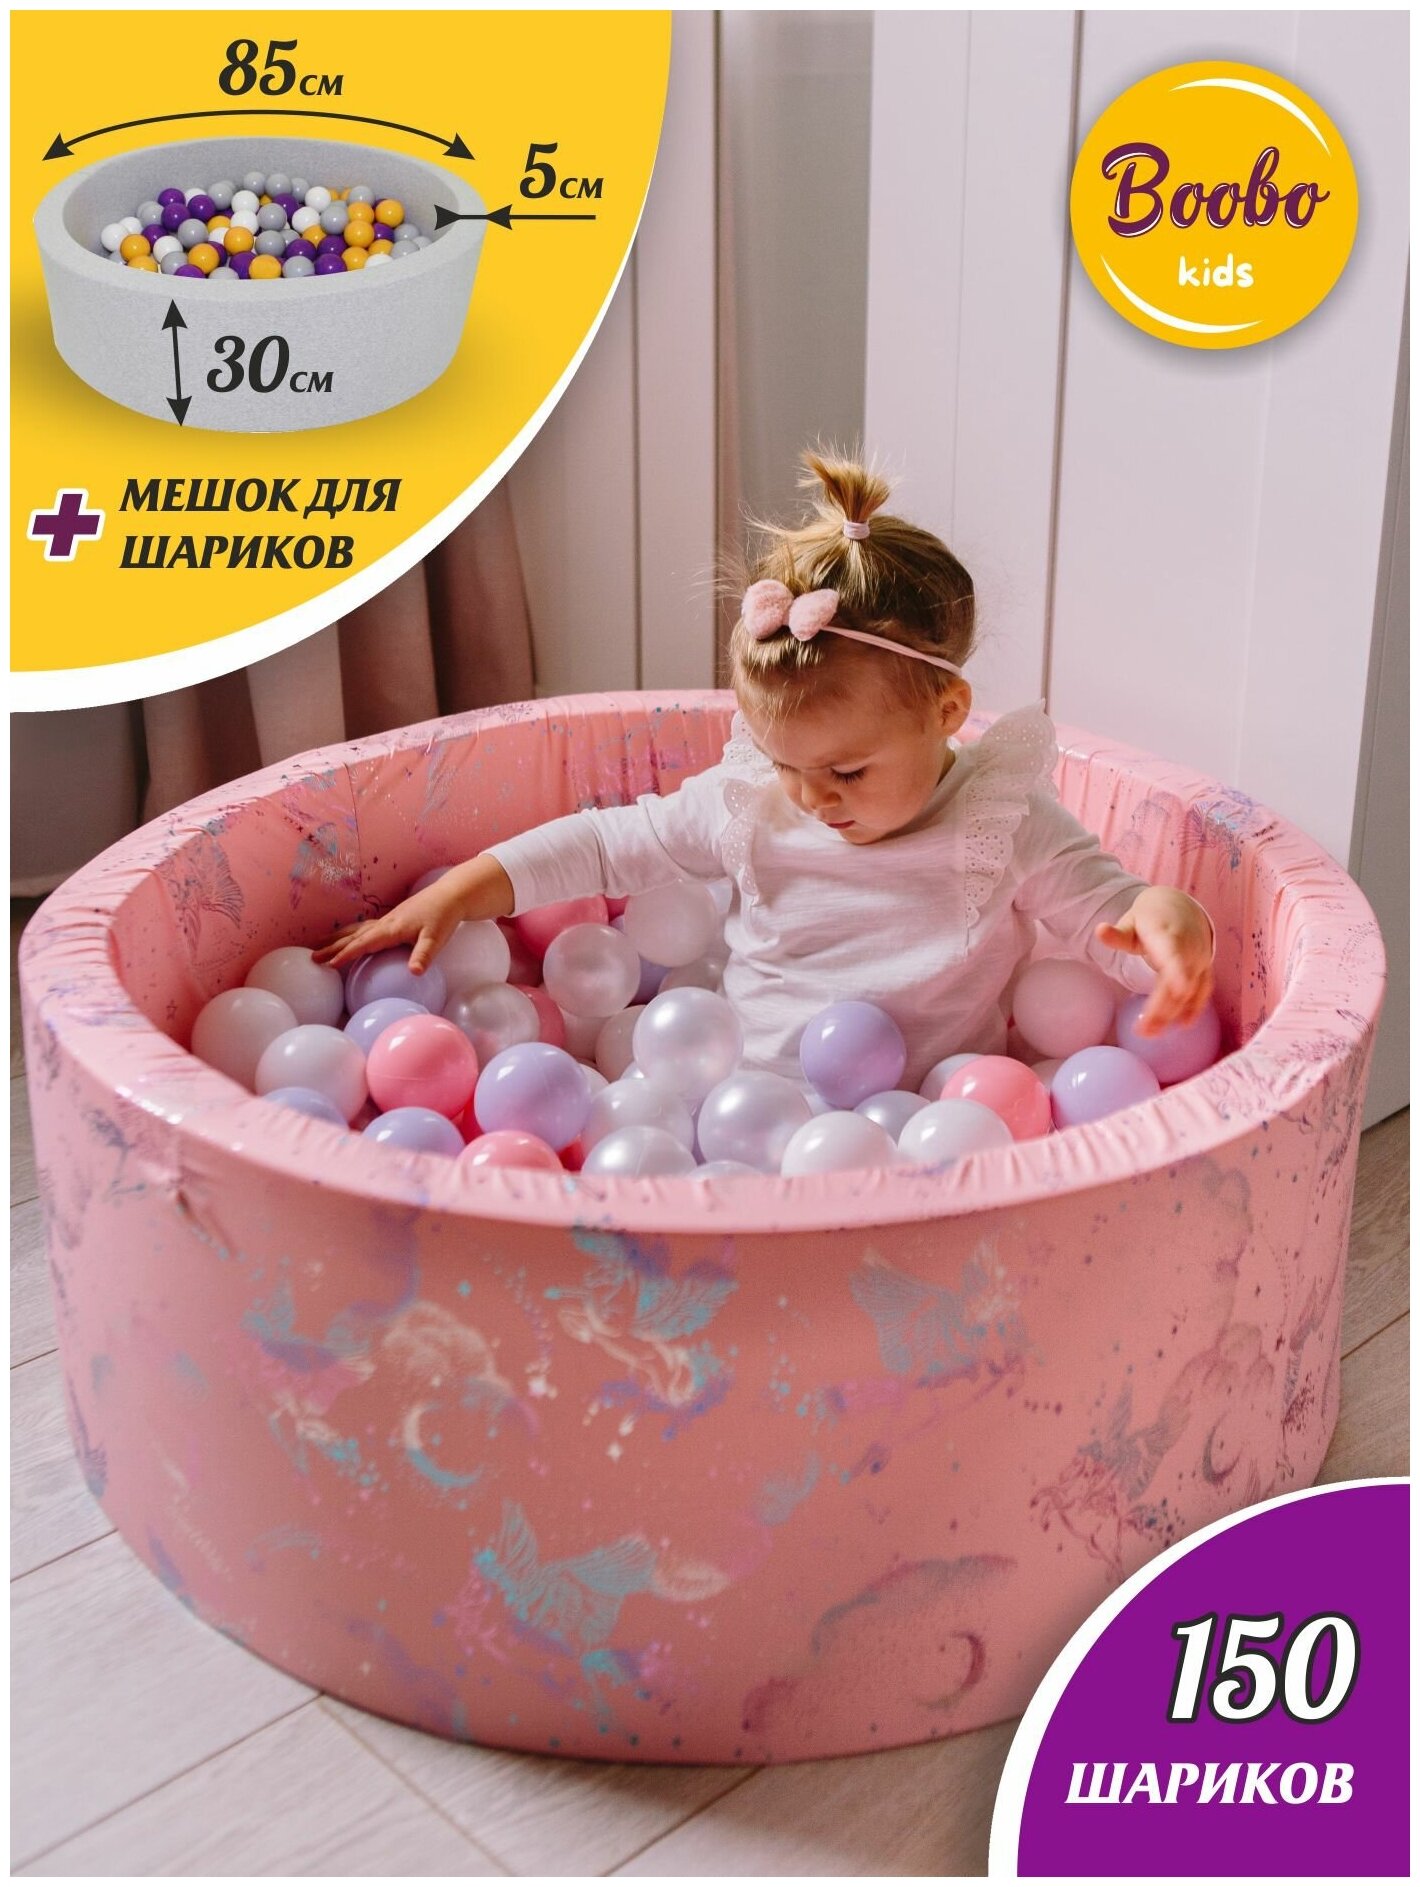 Детский сухой бассейн Boobo.kids 85х30 см с комплектом из 150 шаров - фотография № 1